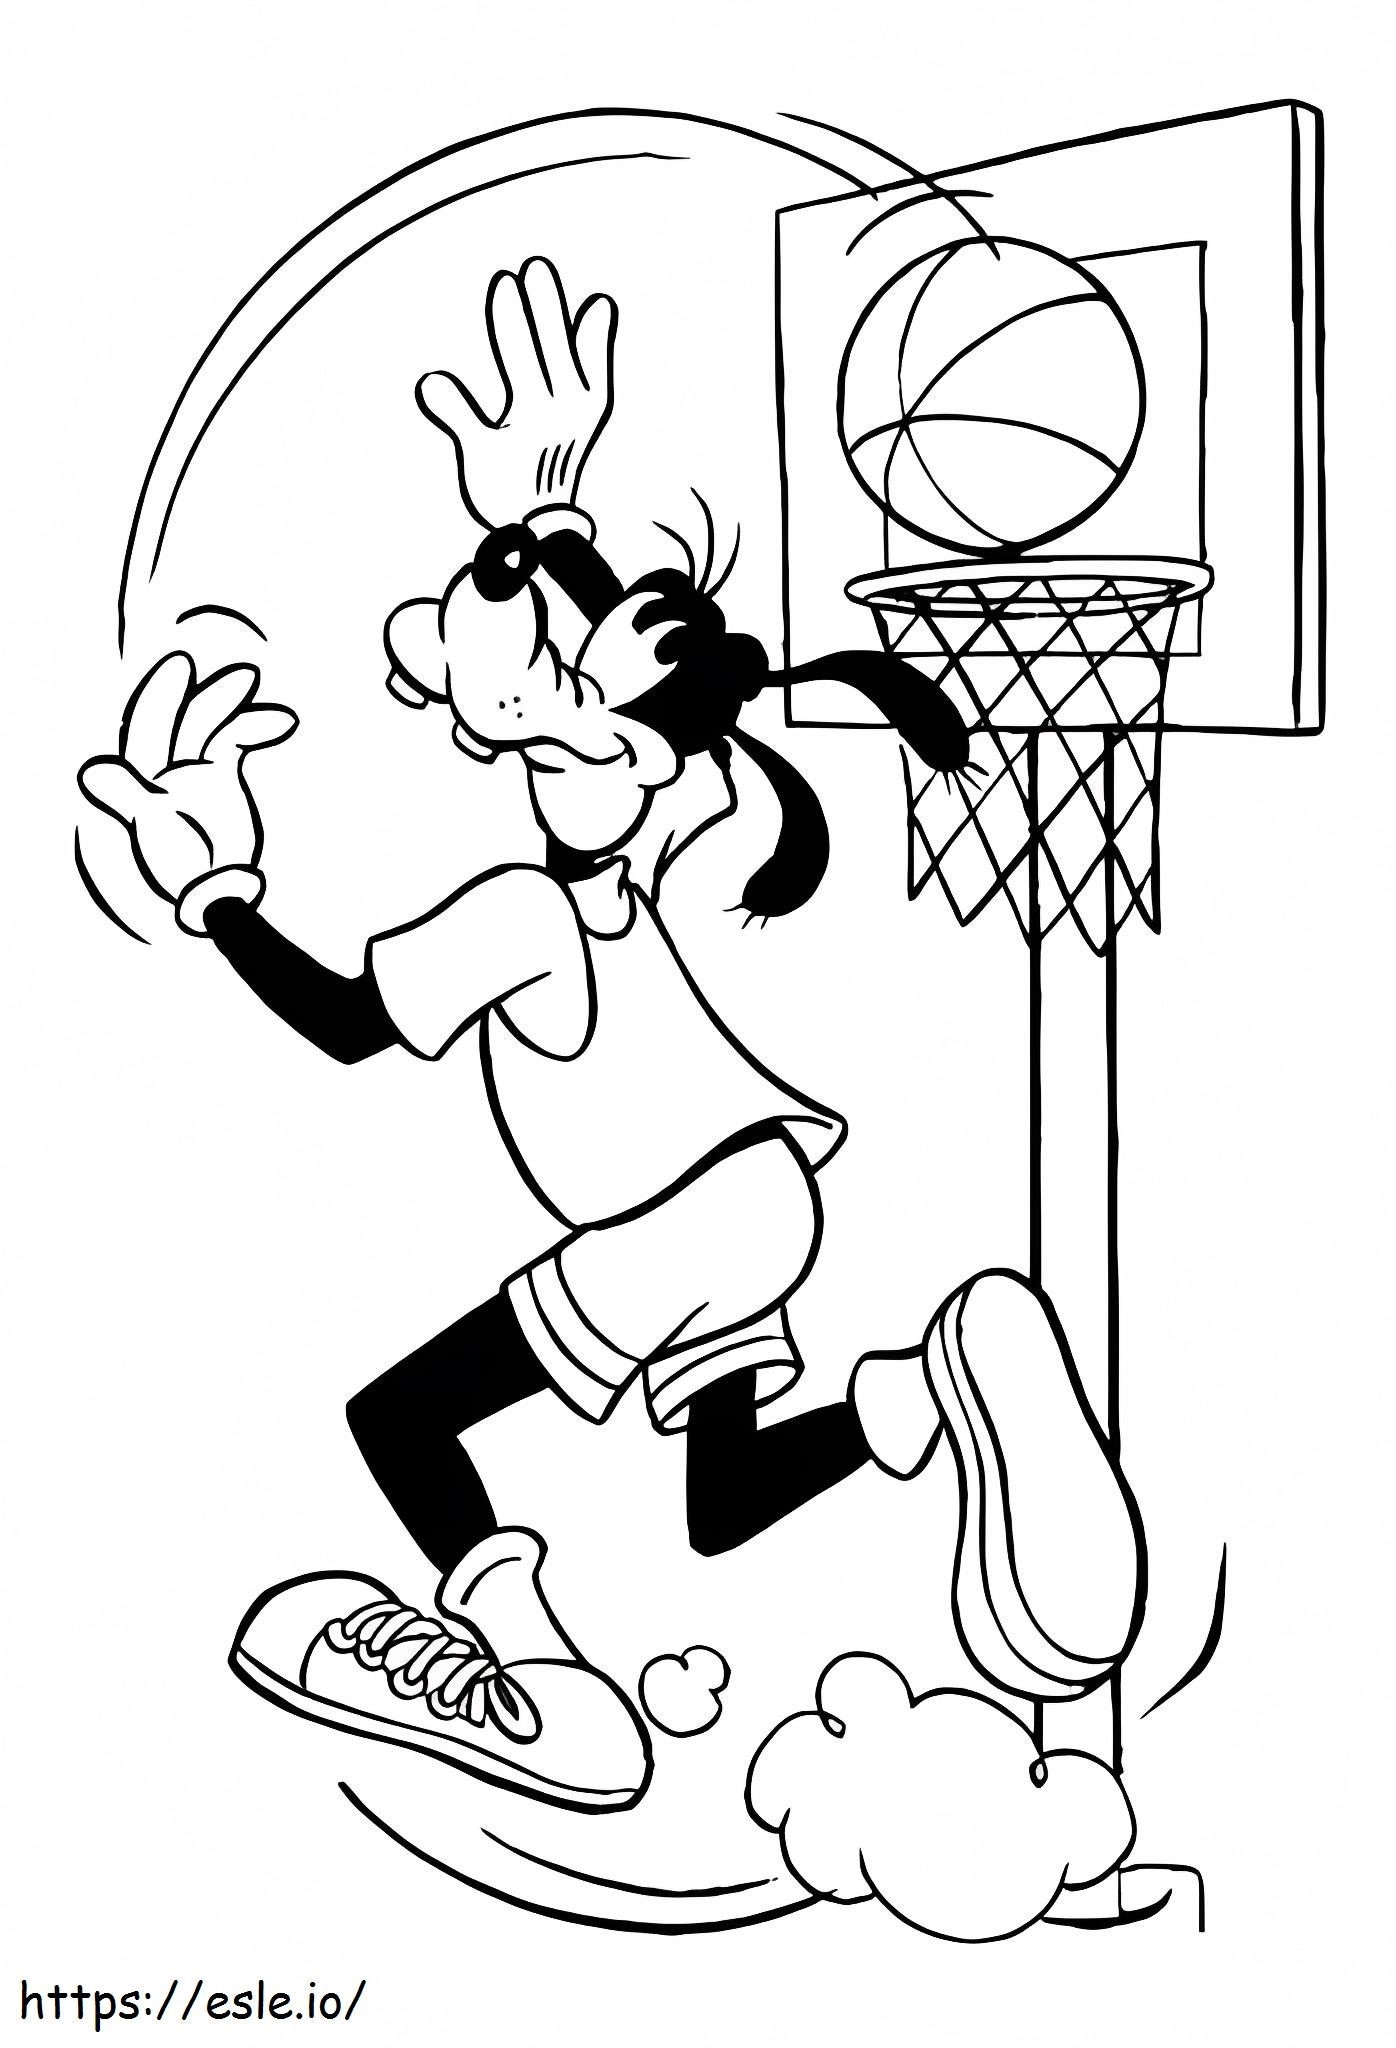 Goofy Basketbol Oynuyor boyama